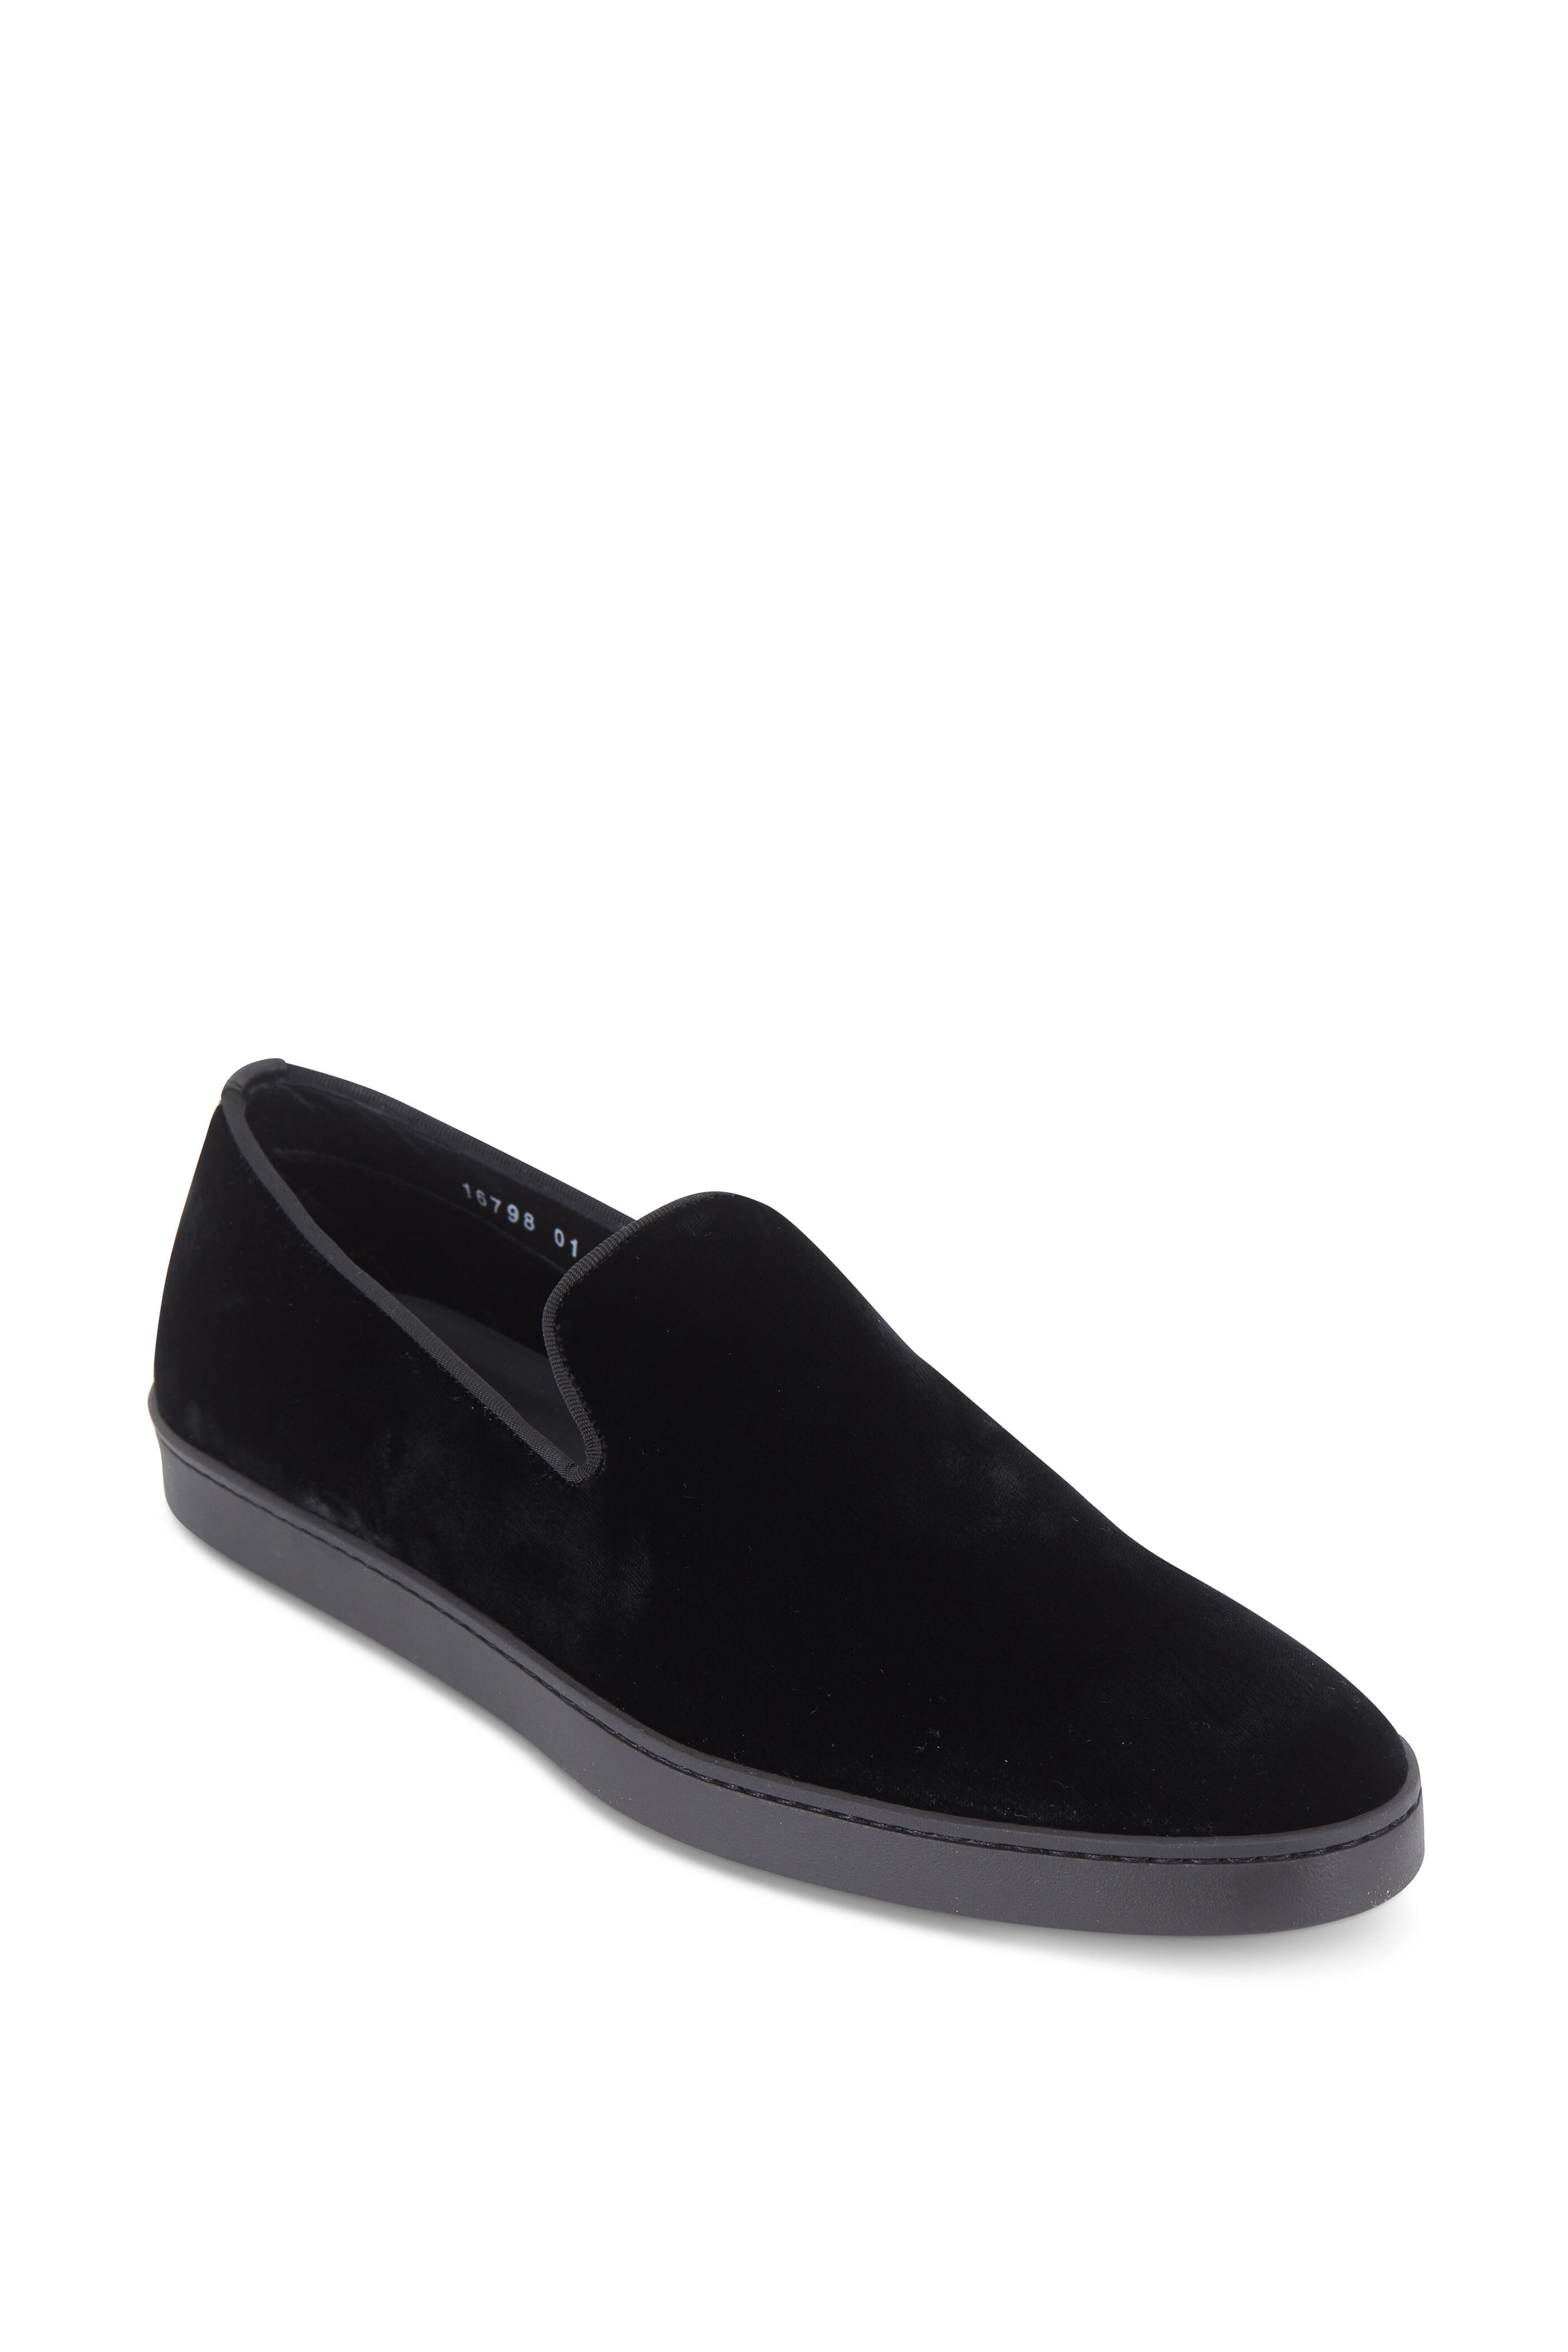 Santoni almond-toe leather loafers - Black